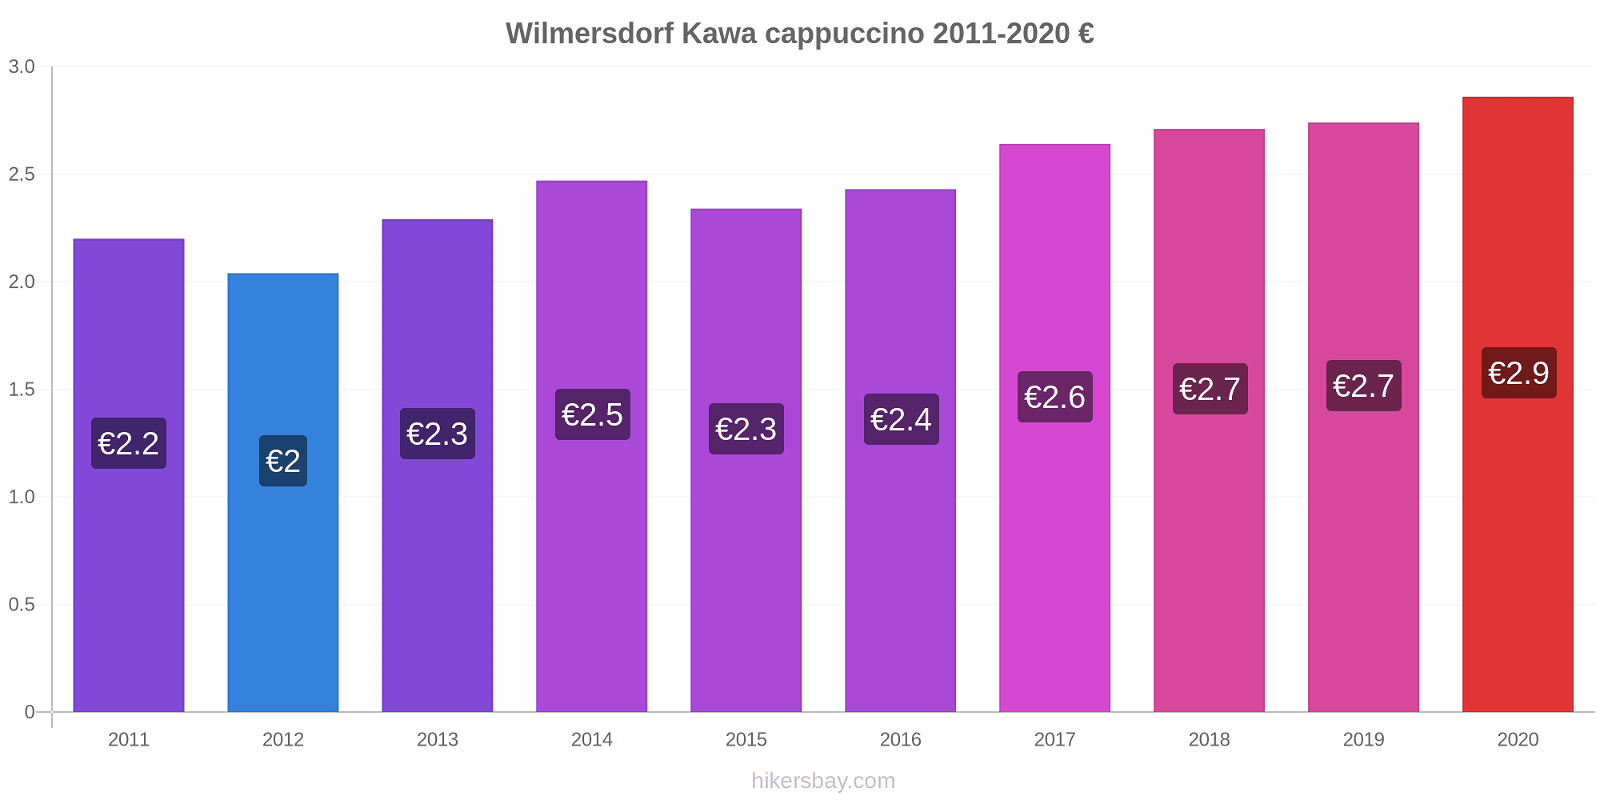 Wilmersdorf zmiany cen Kawa cappuccino hikersbay.com